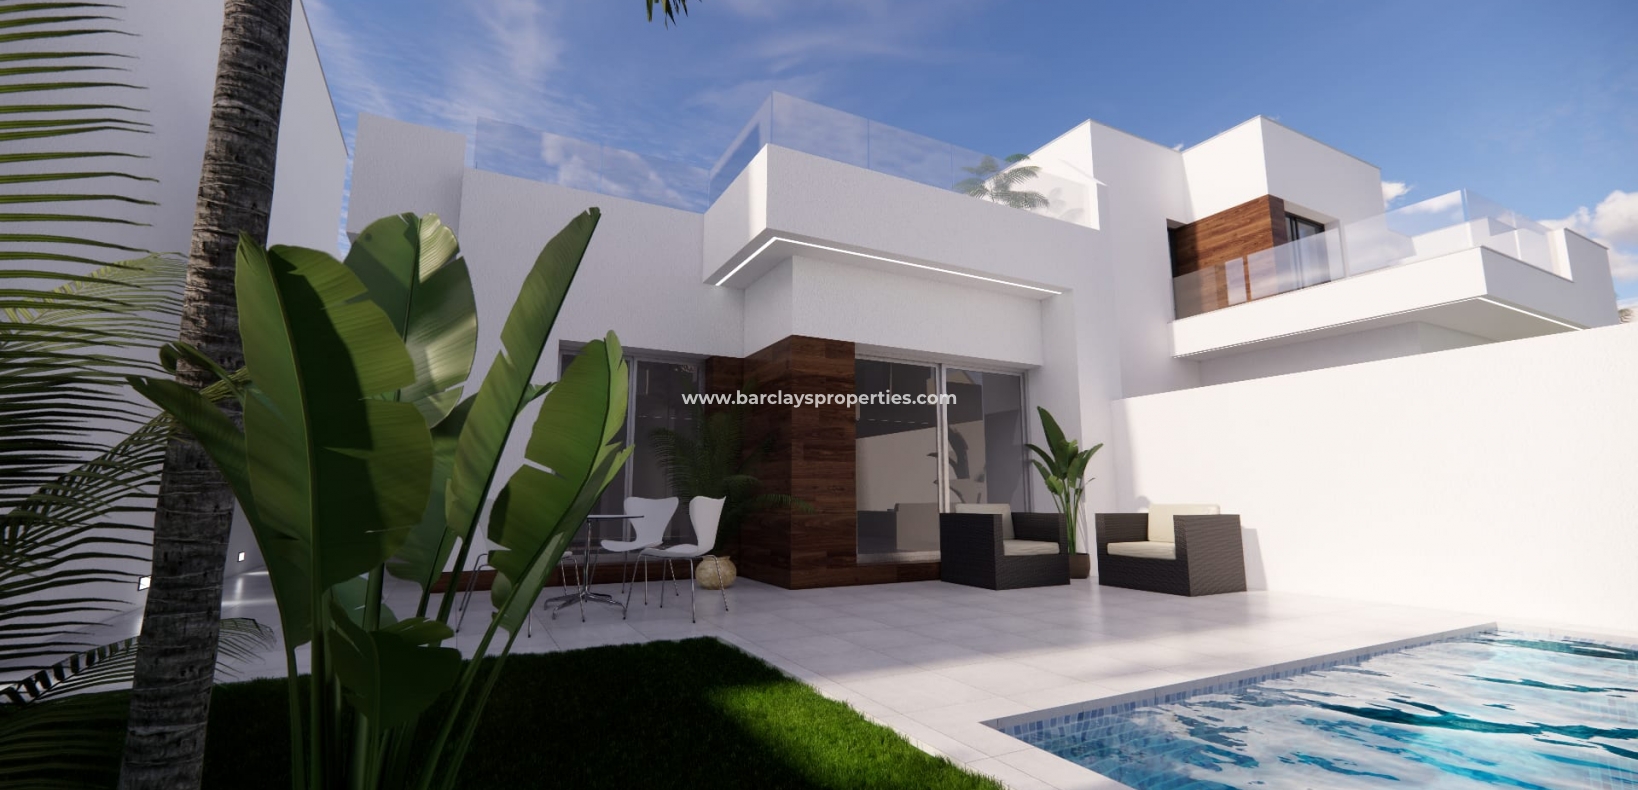 New build villa for sale in Costa Blanca